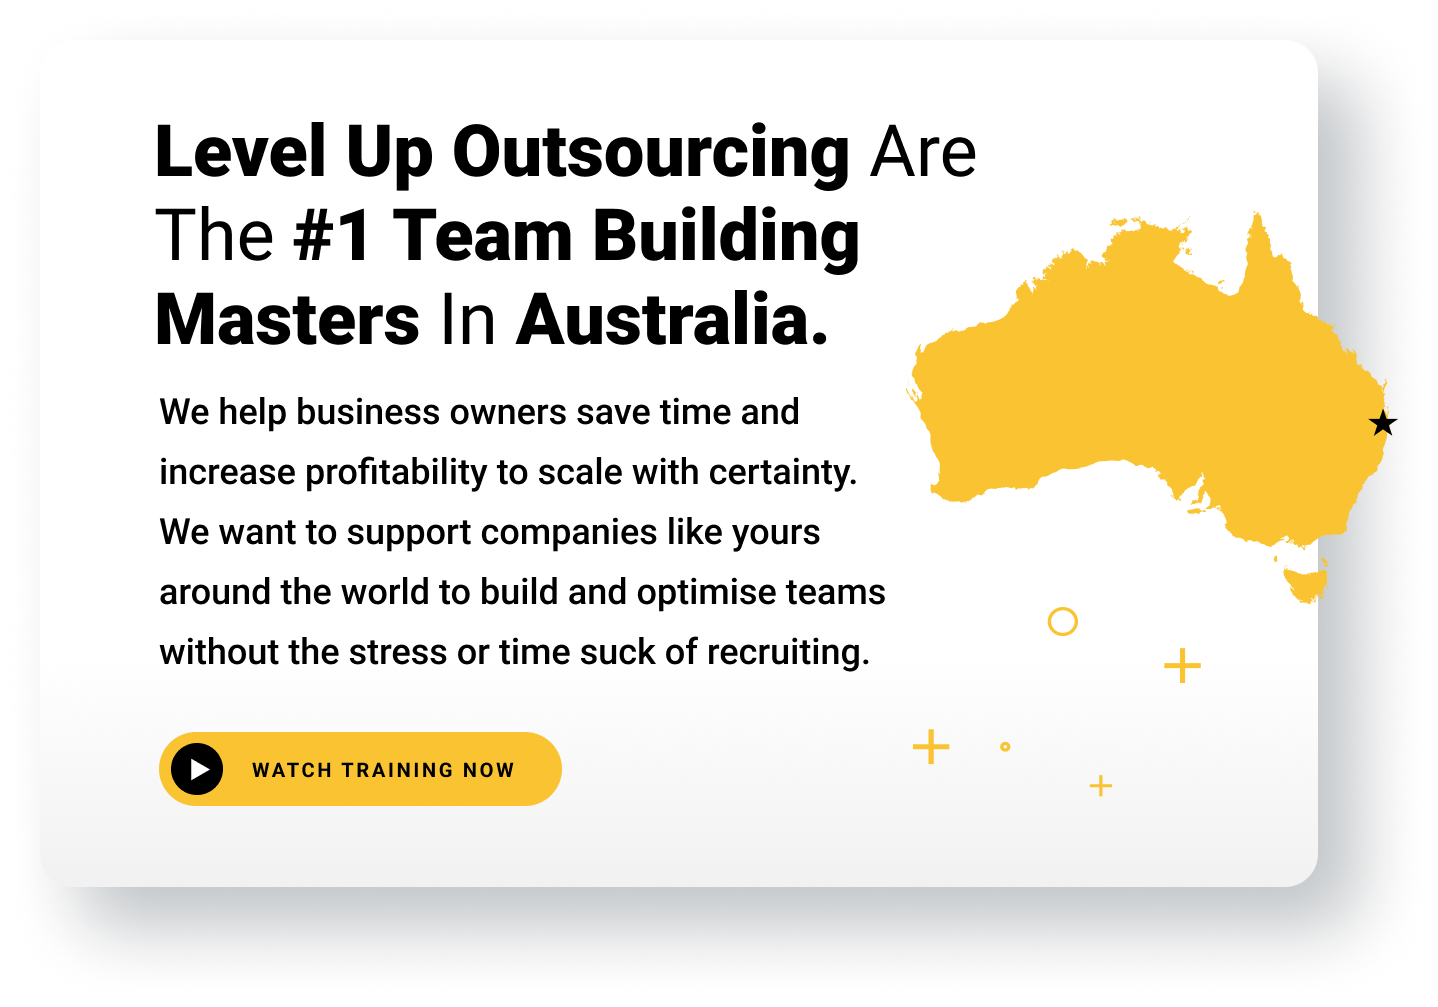 Team Building Masters in Australia